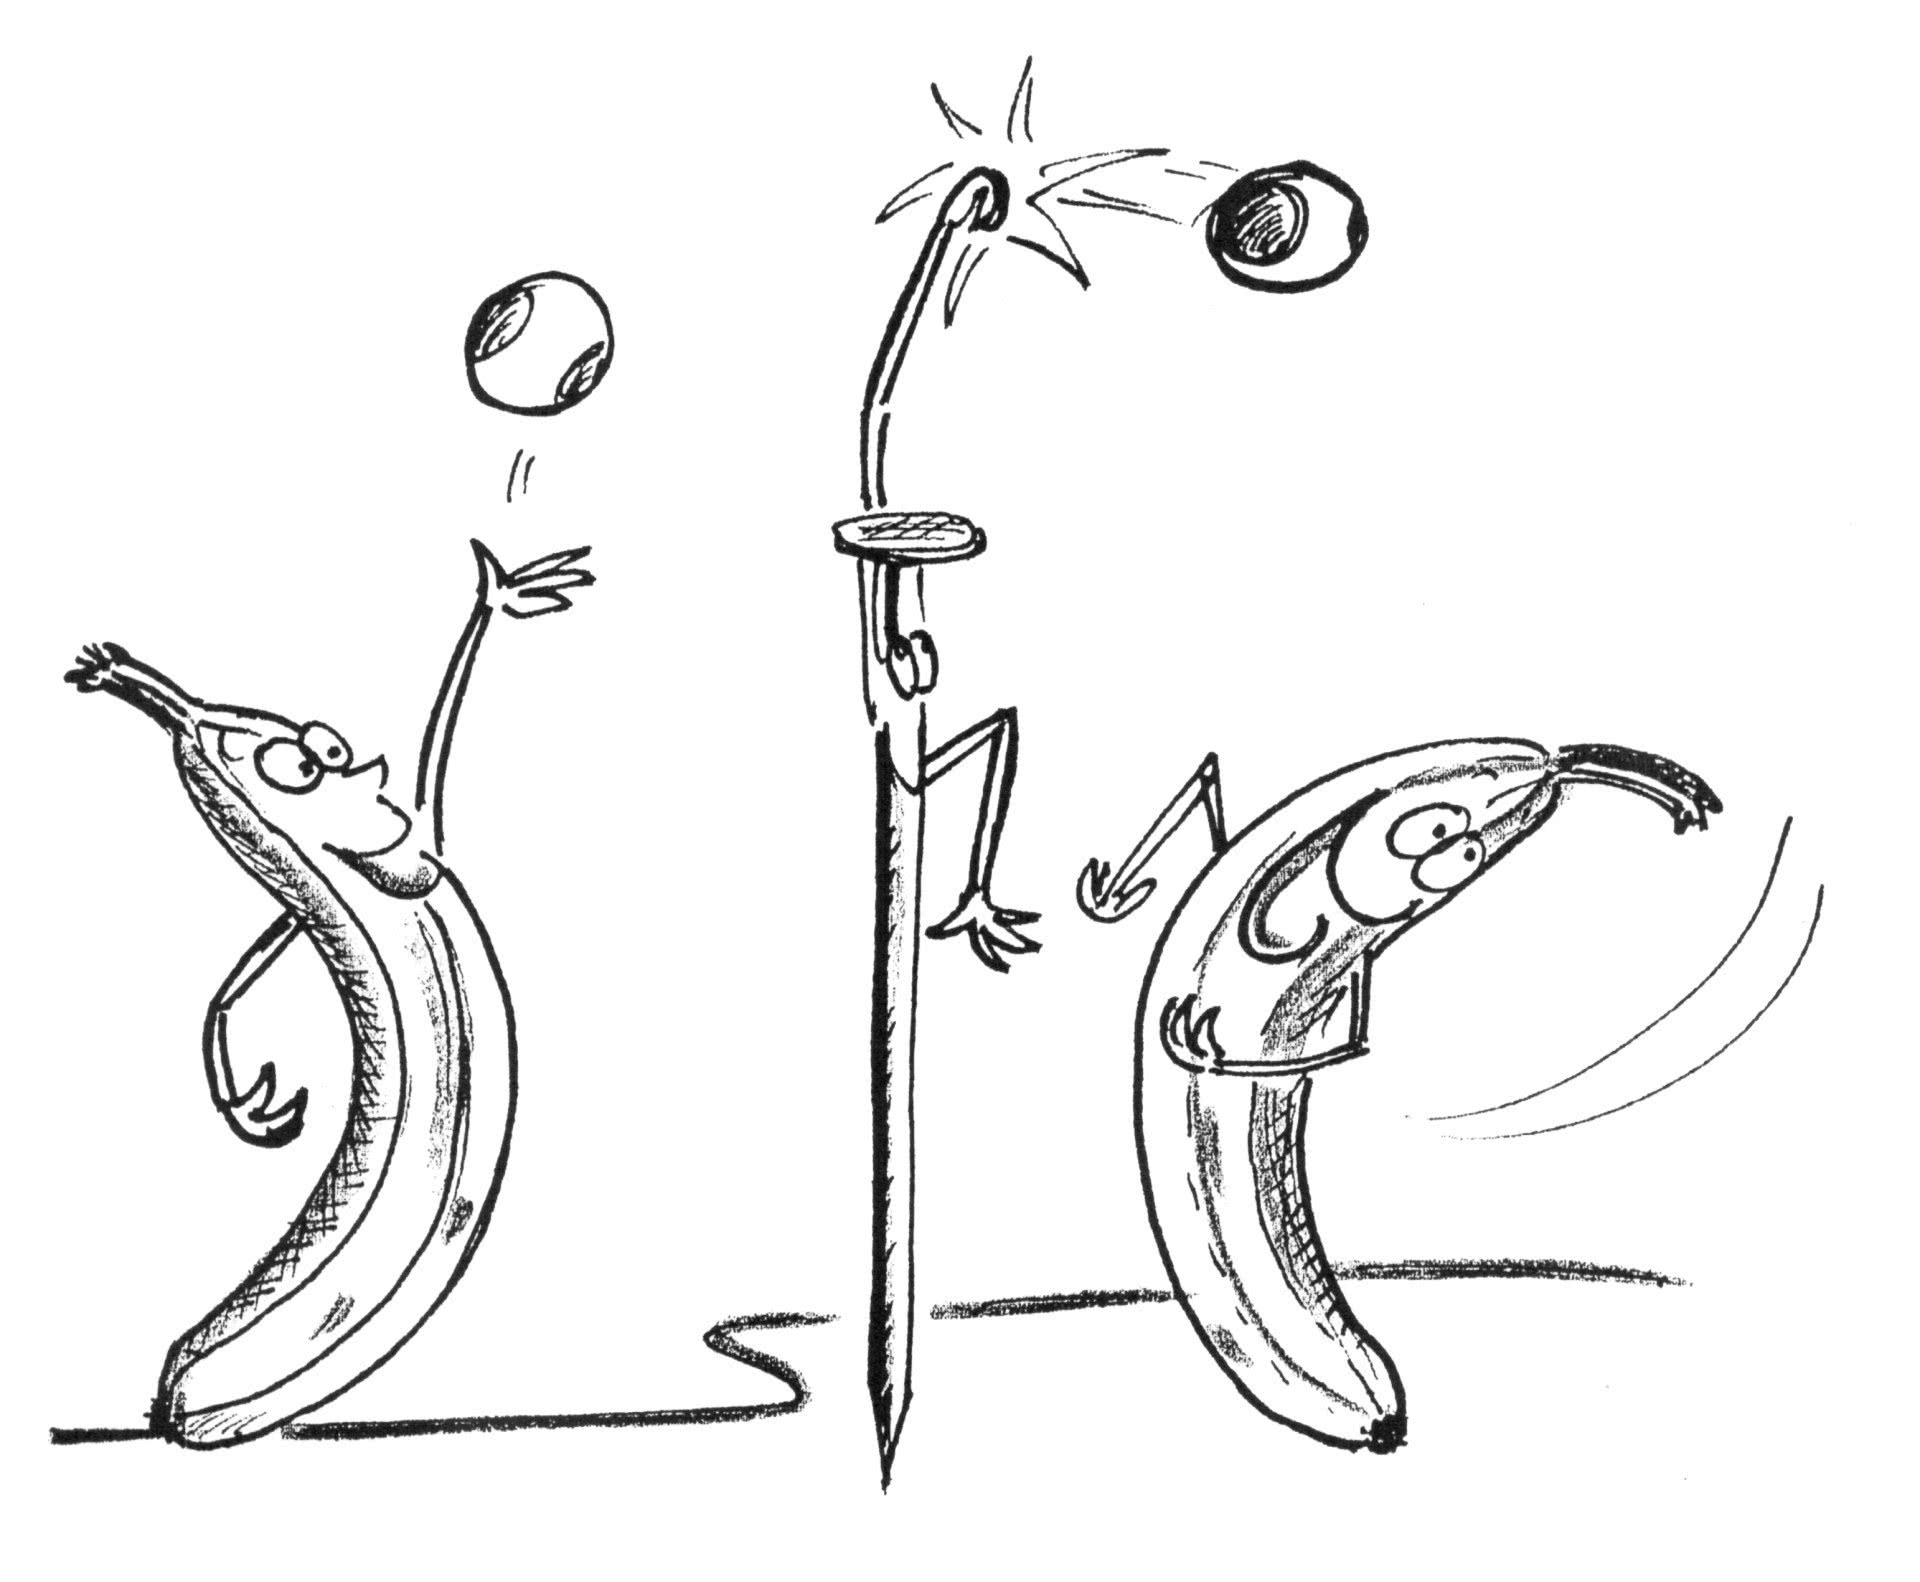 Dessin: deux joueurs déguisés en banane se renvoient deux ballon par-dessus un filet.